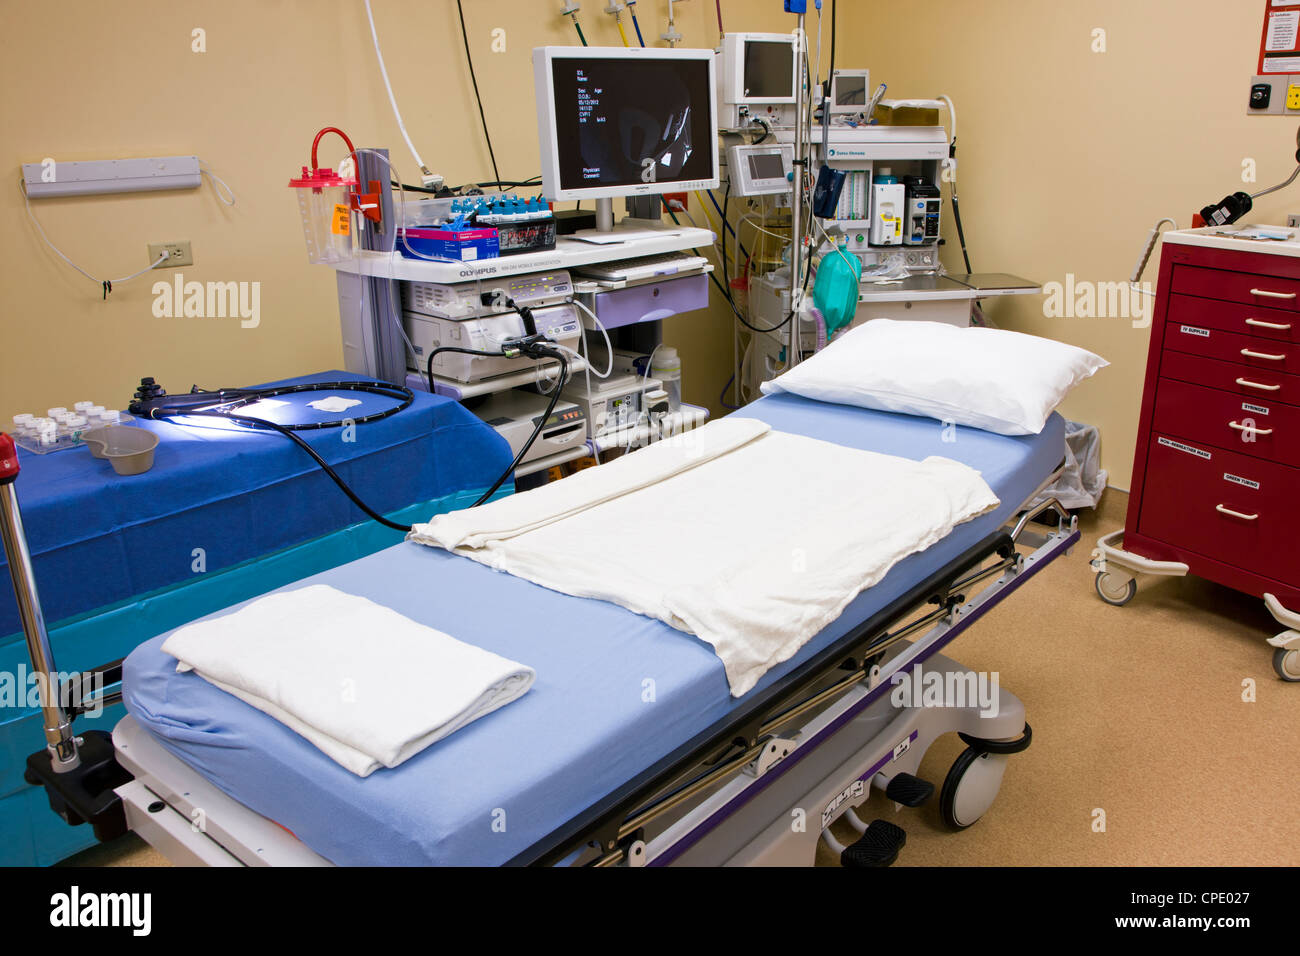 Chirurgischen Suite im Krankenhaus für Endoskopie und Koloskopie Verfahren vorbereitet. Stockfoto